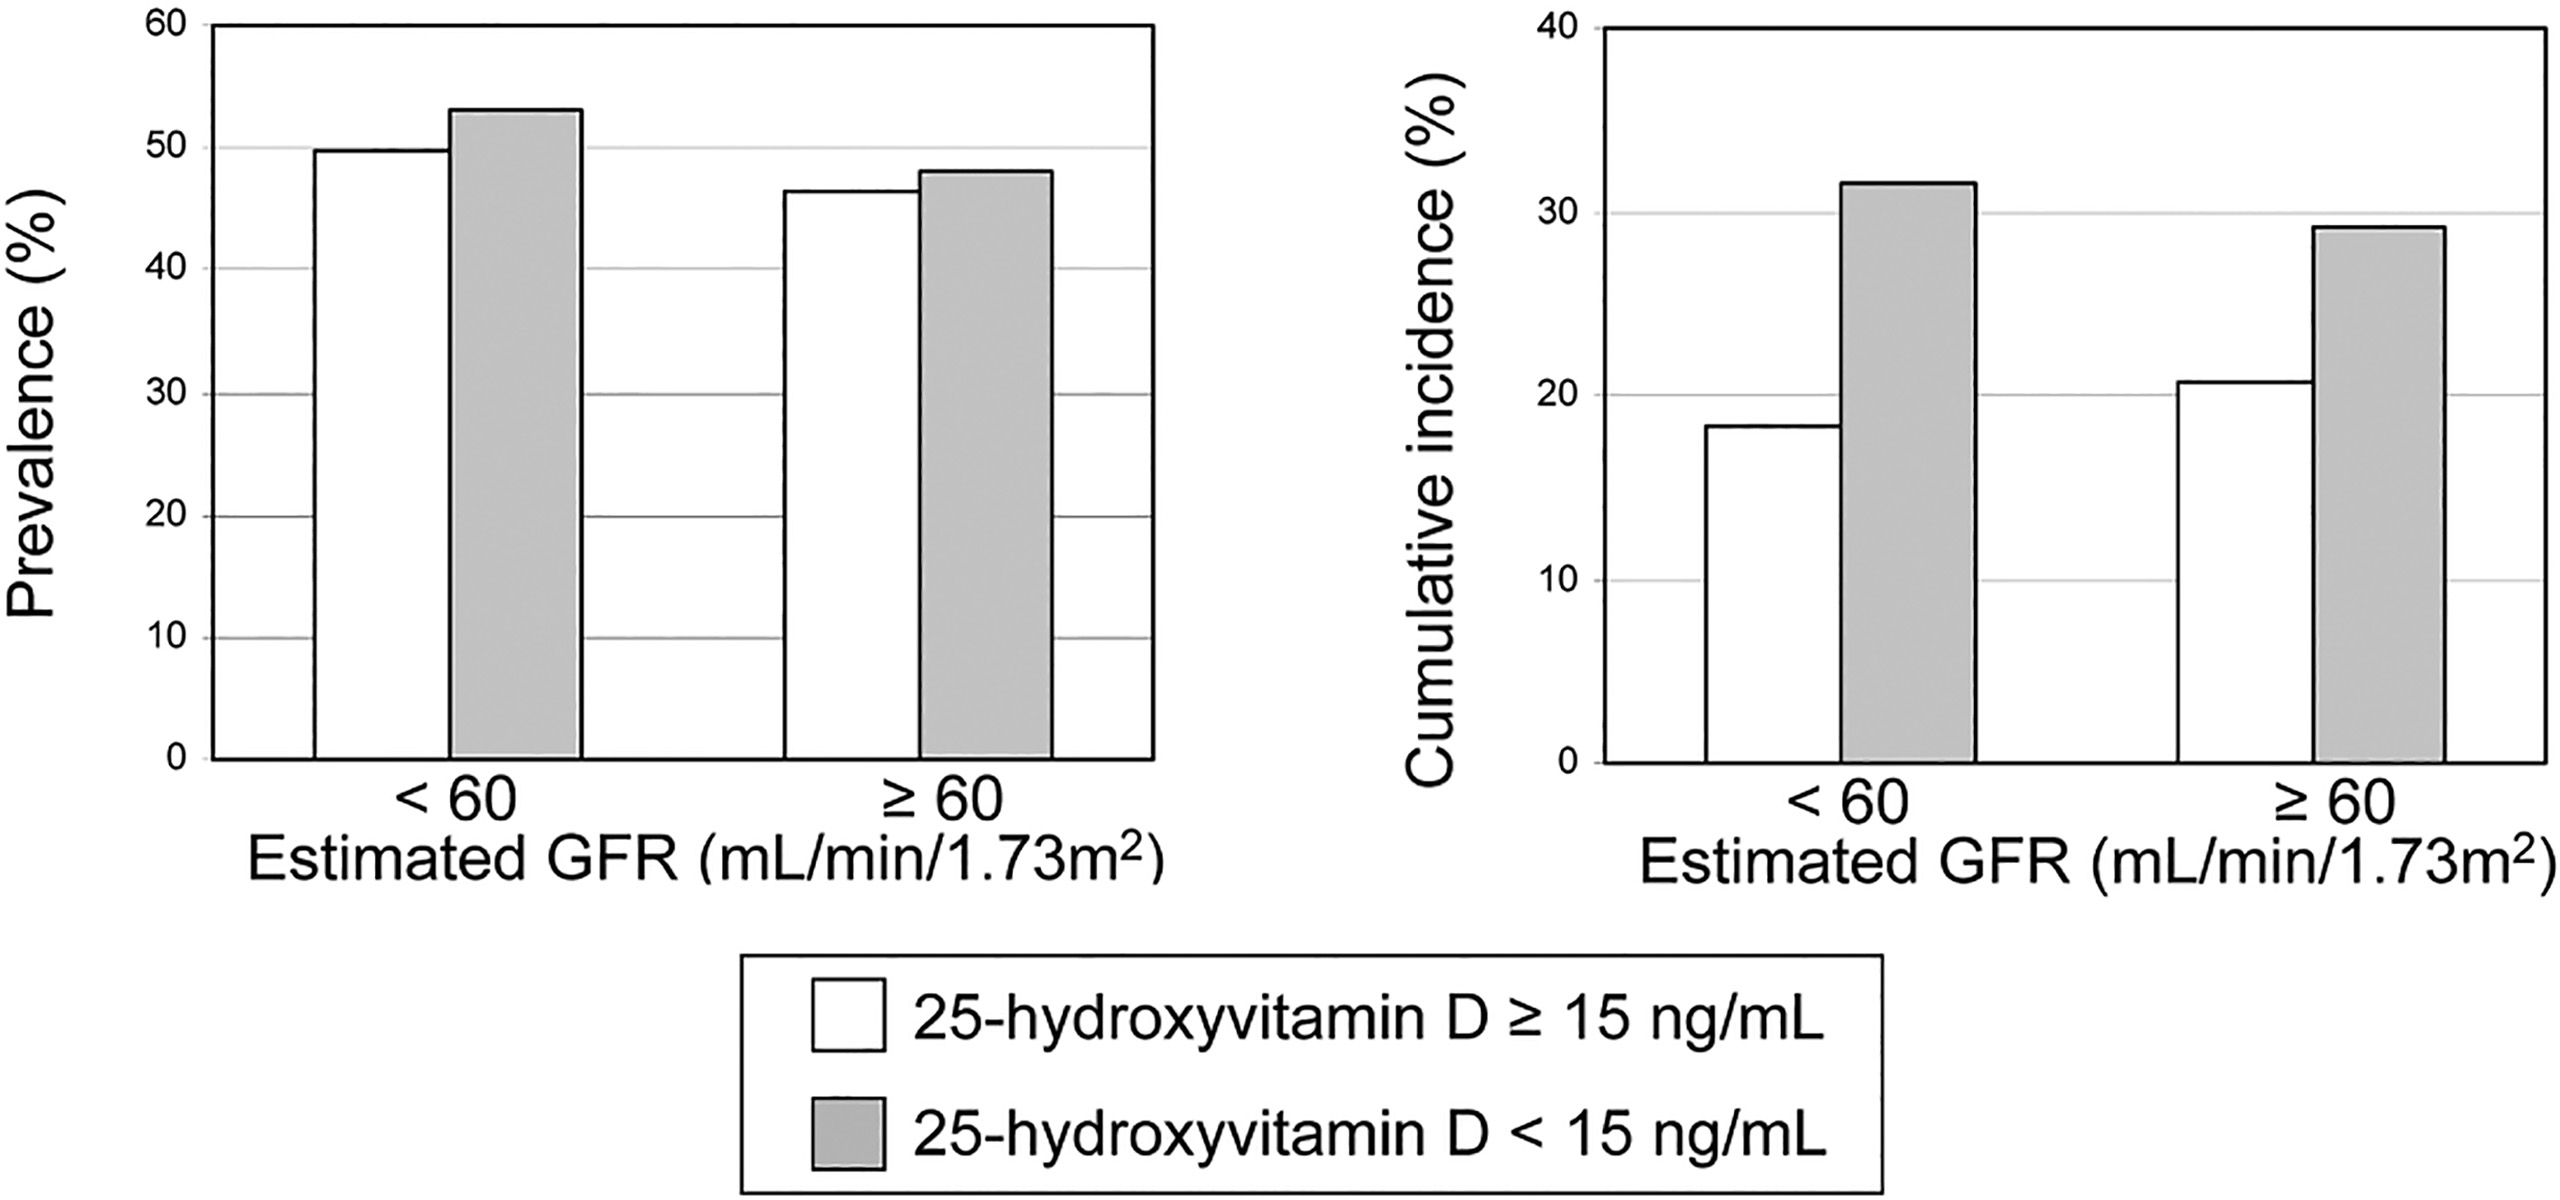 prévalence et incidence des calcifications artérielles selon le statut en vitamine D